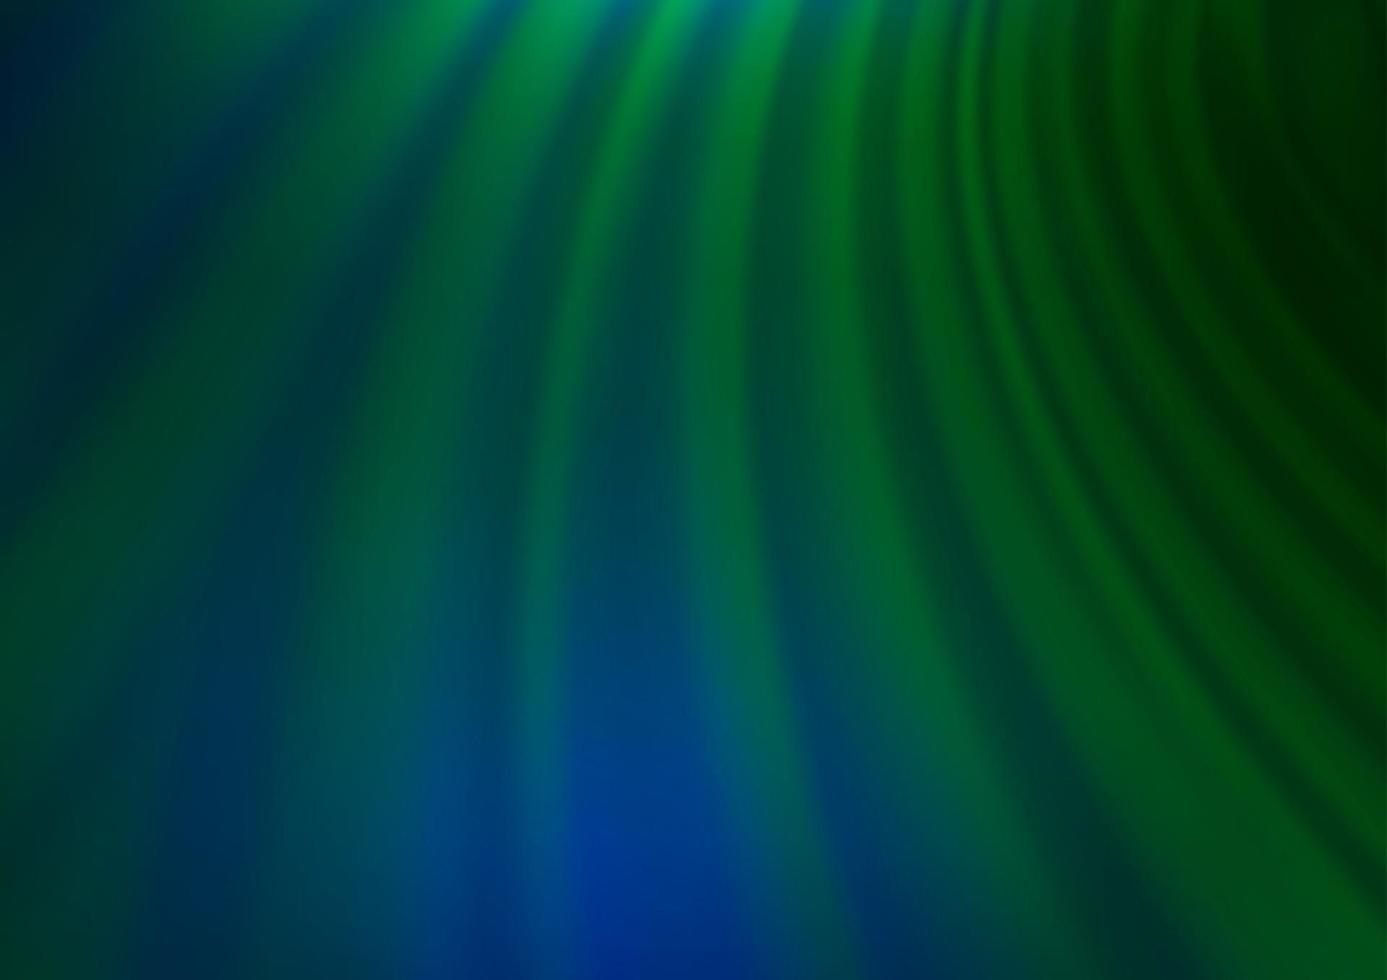 mörkblått, grönt vektorsuddighetsmönster. vektor